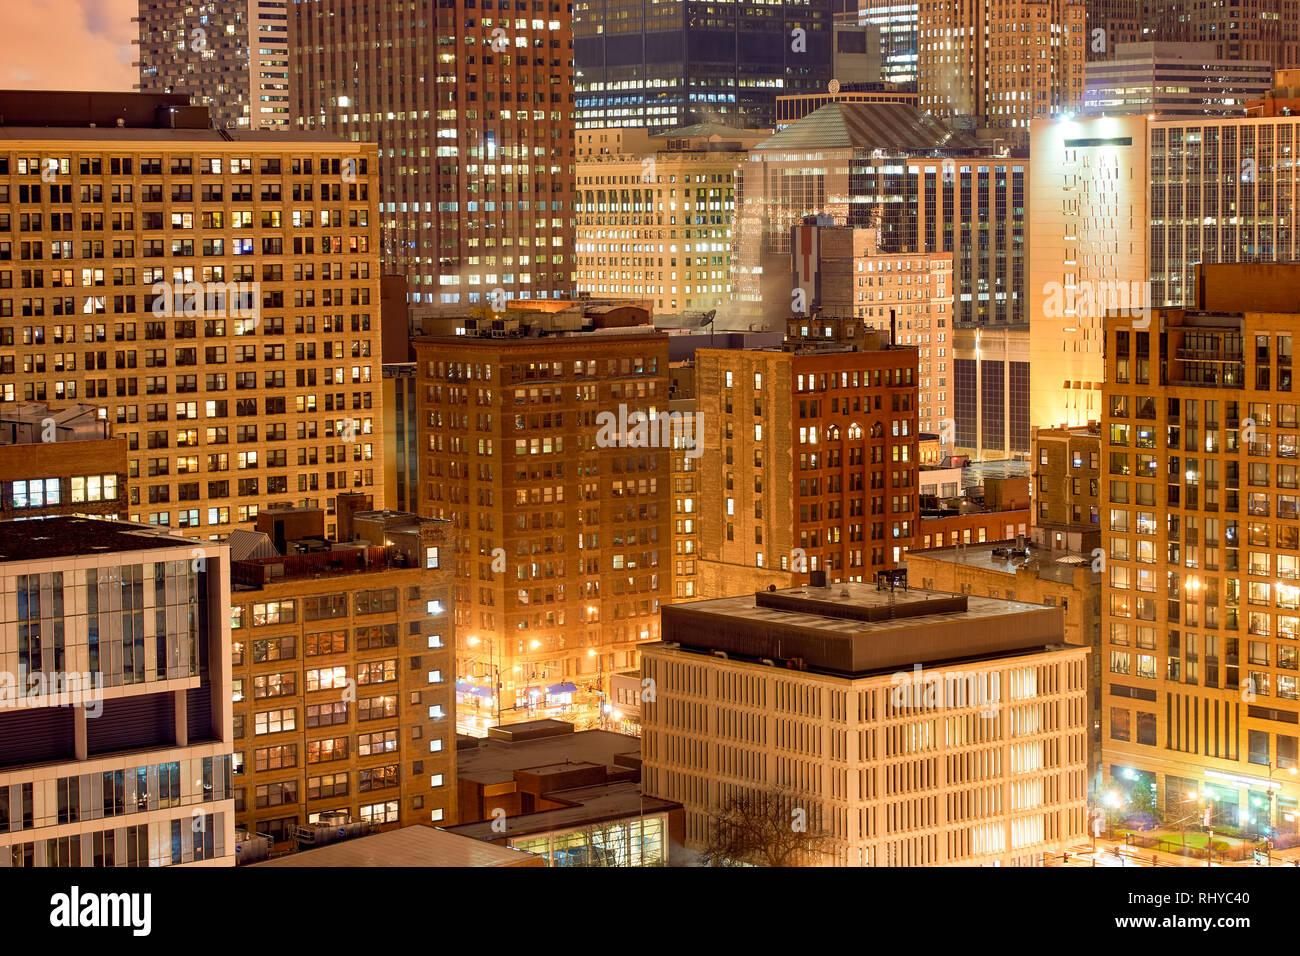 CHICAGO, IL - 27. MÄRZ 2016: Blick auf Chicago bei Nacht. Die Stadt ist eine internationale Drehscheibe für Finanzen, Handel, Industrie, Technik, telecommunicatio Stockfoto